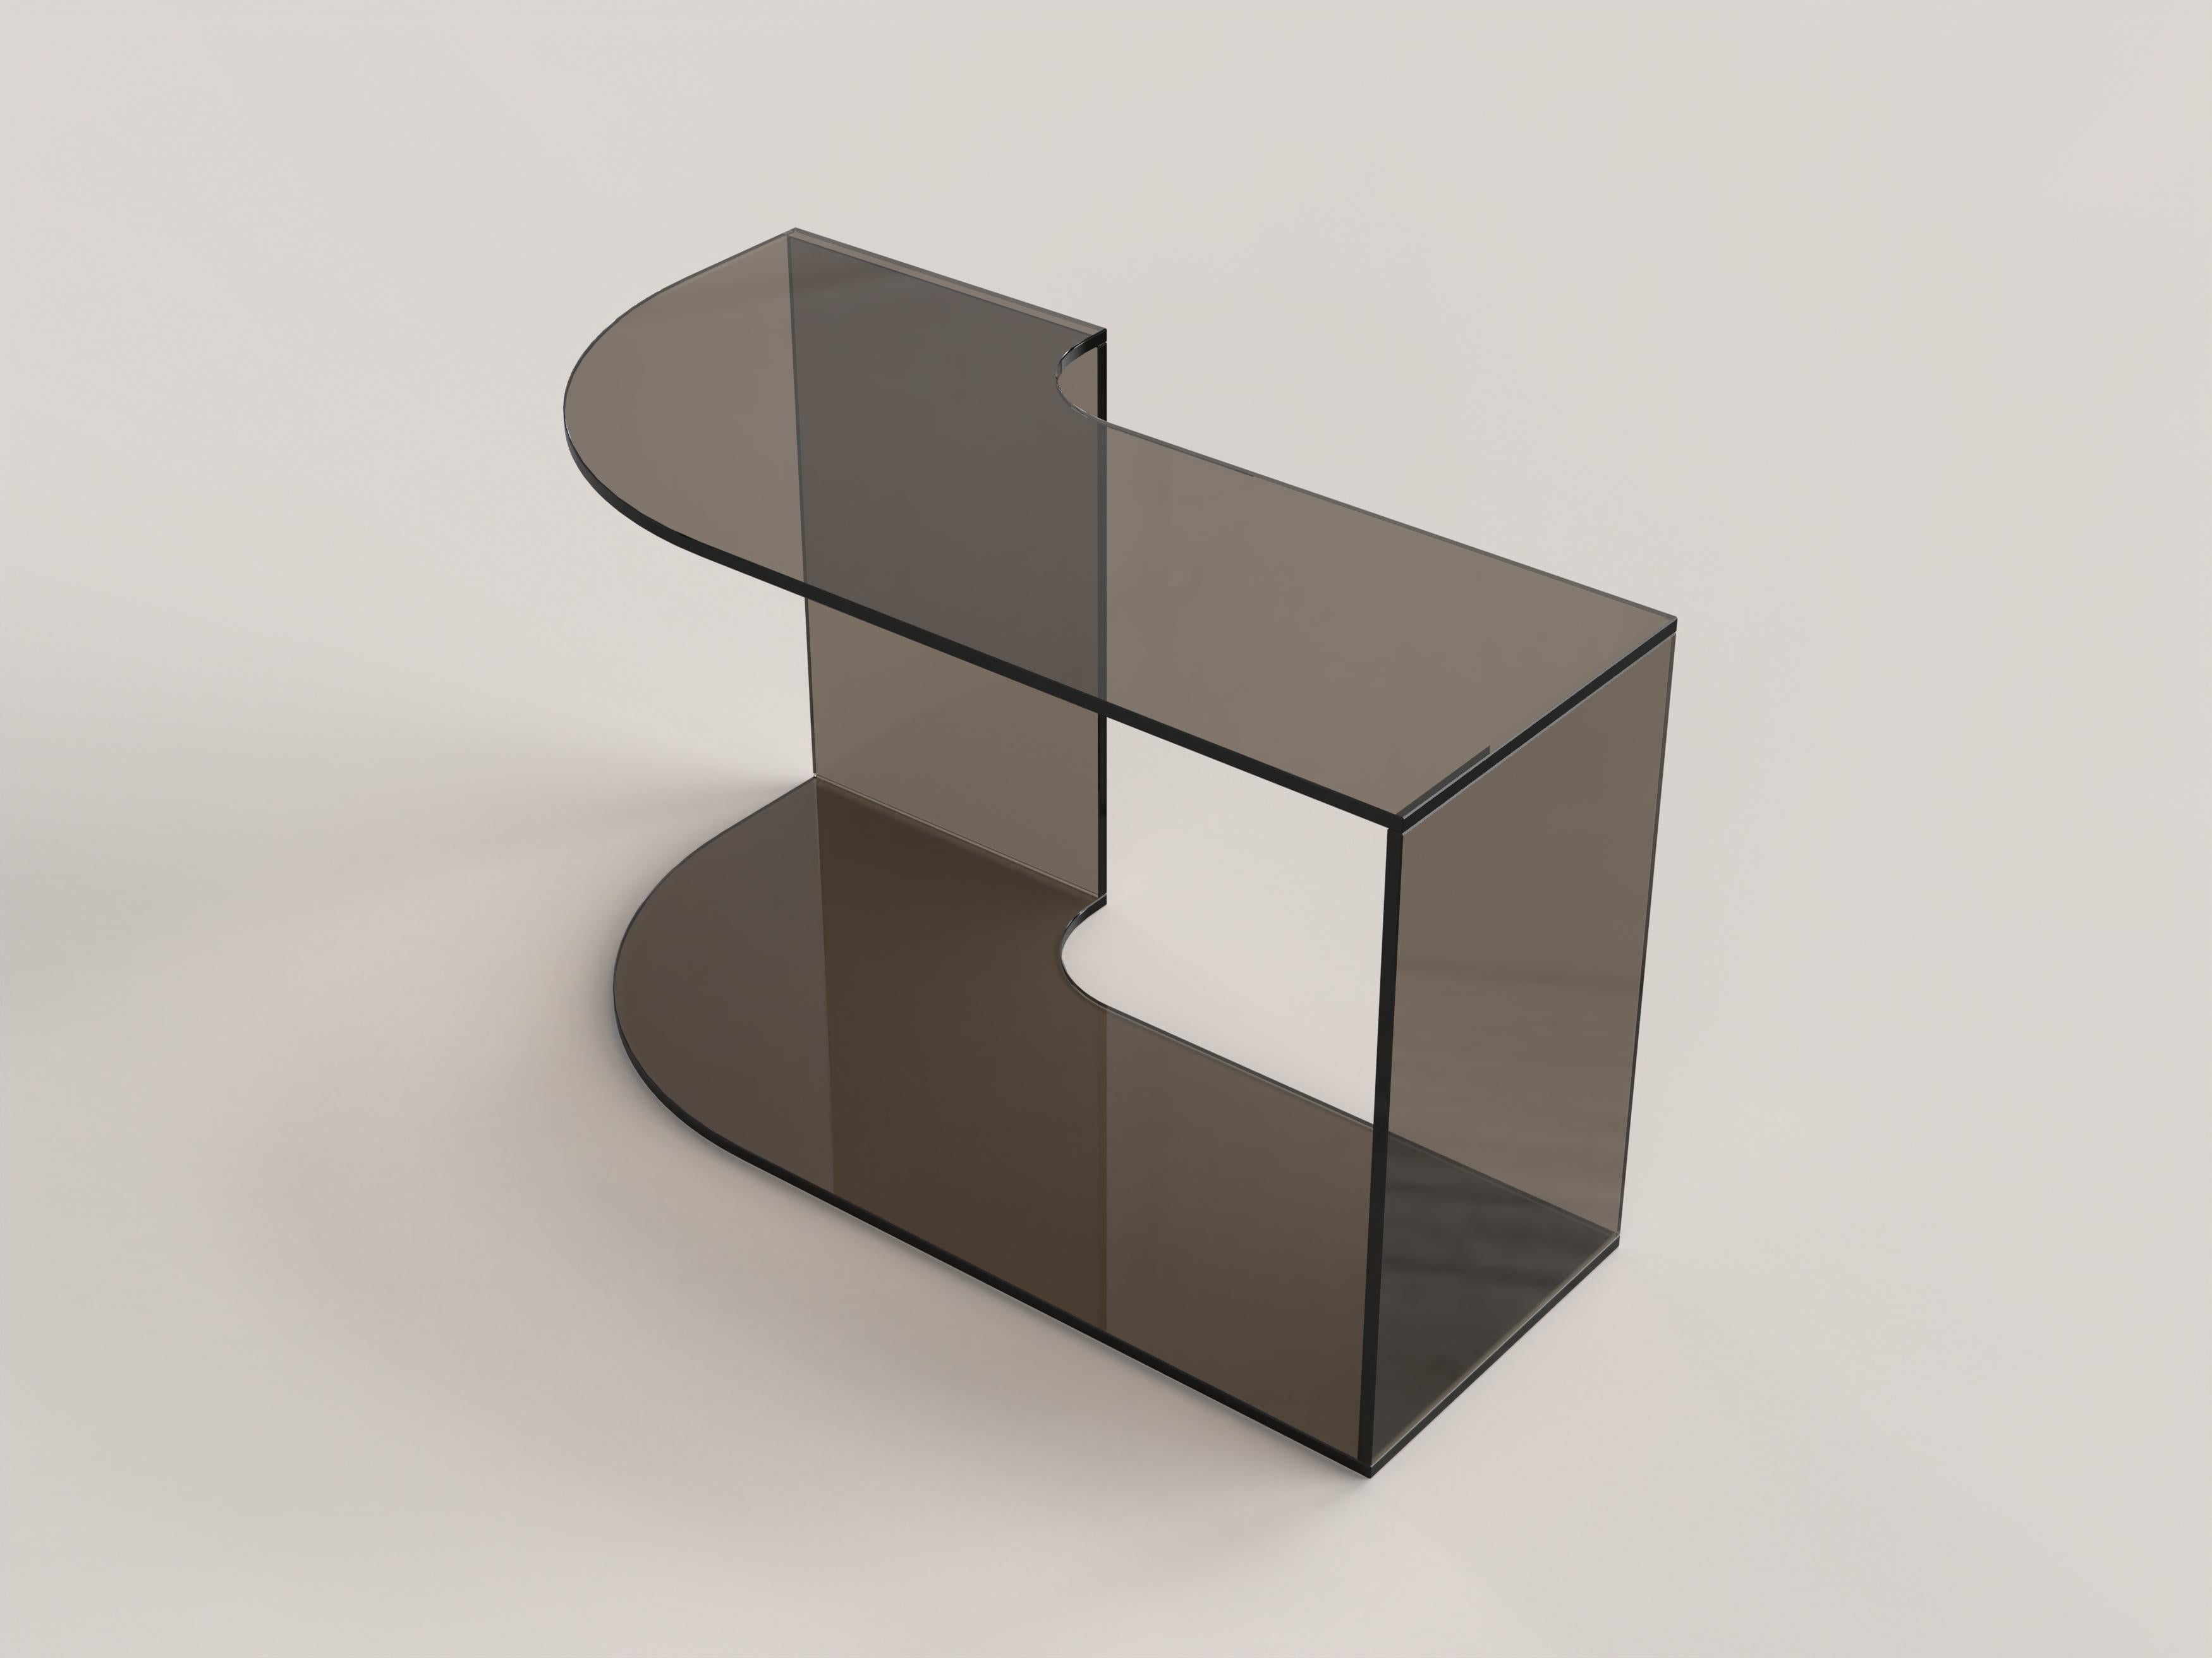 Contemporary Limited Edition Bronze Glass Table, Quarter V2 by Edizione Limitata For Sale 3